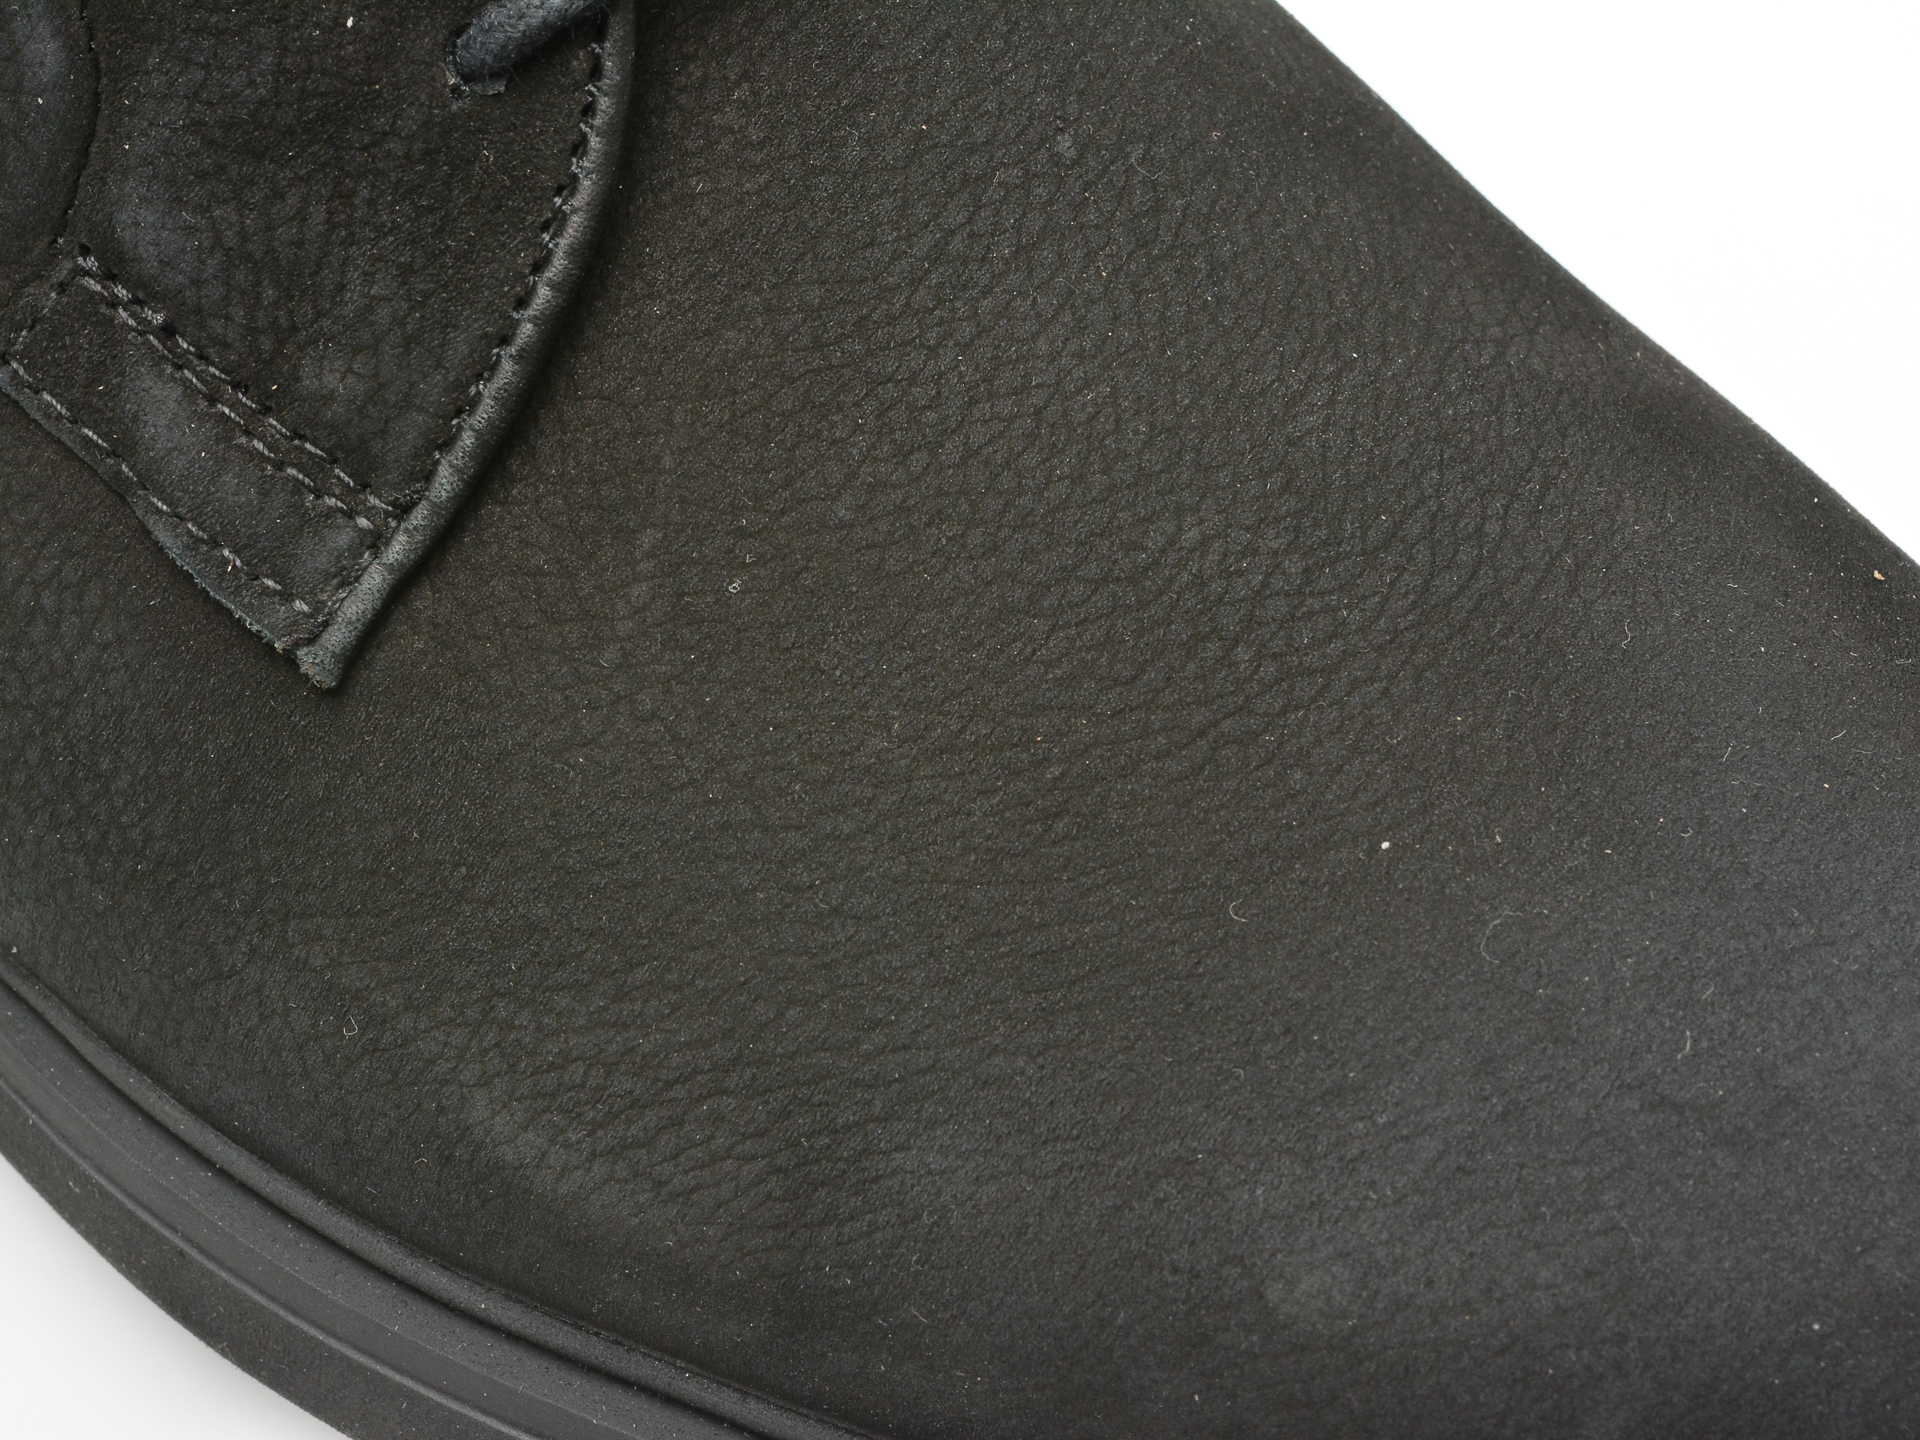 Poze Pantofi OTTER negri, E1801, din nabuc Otter